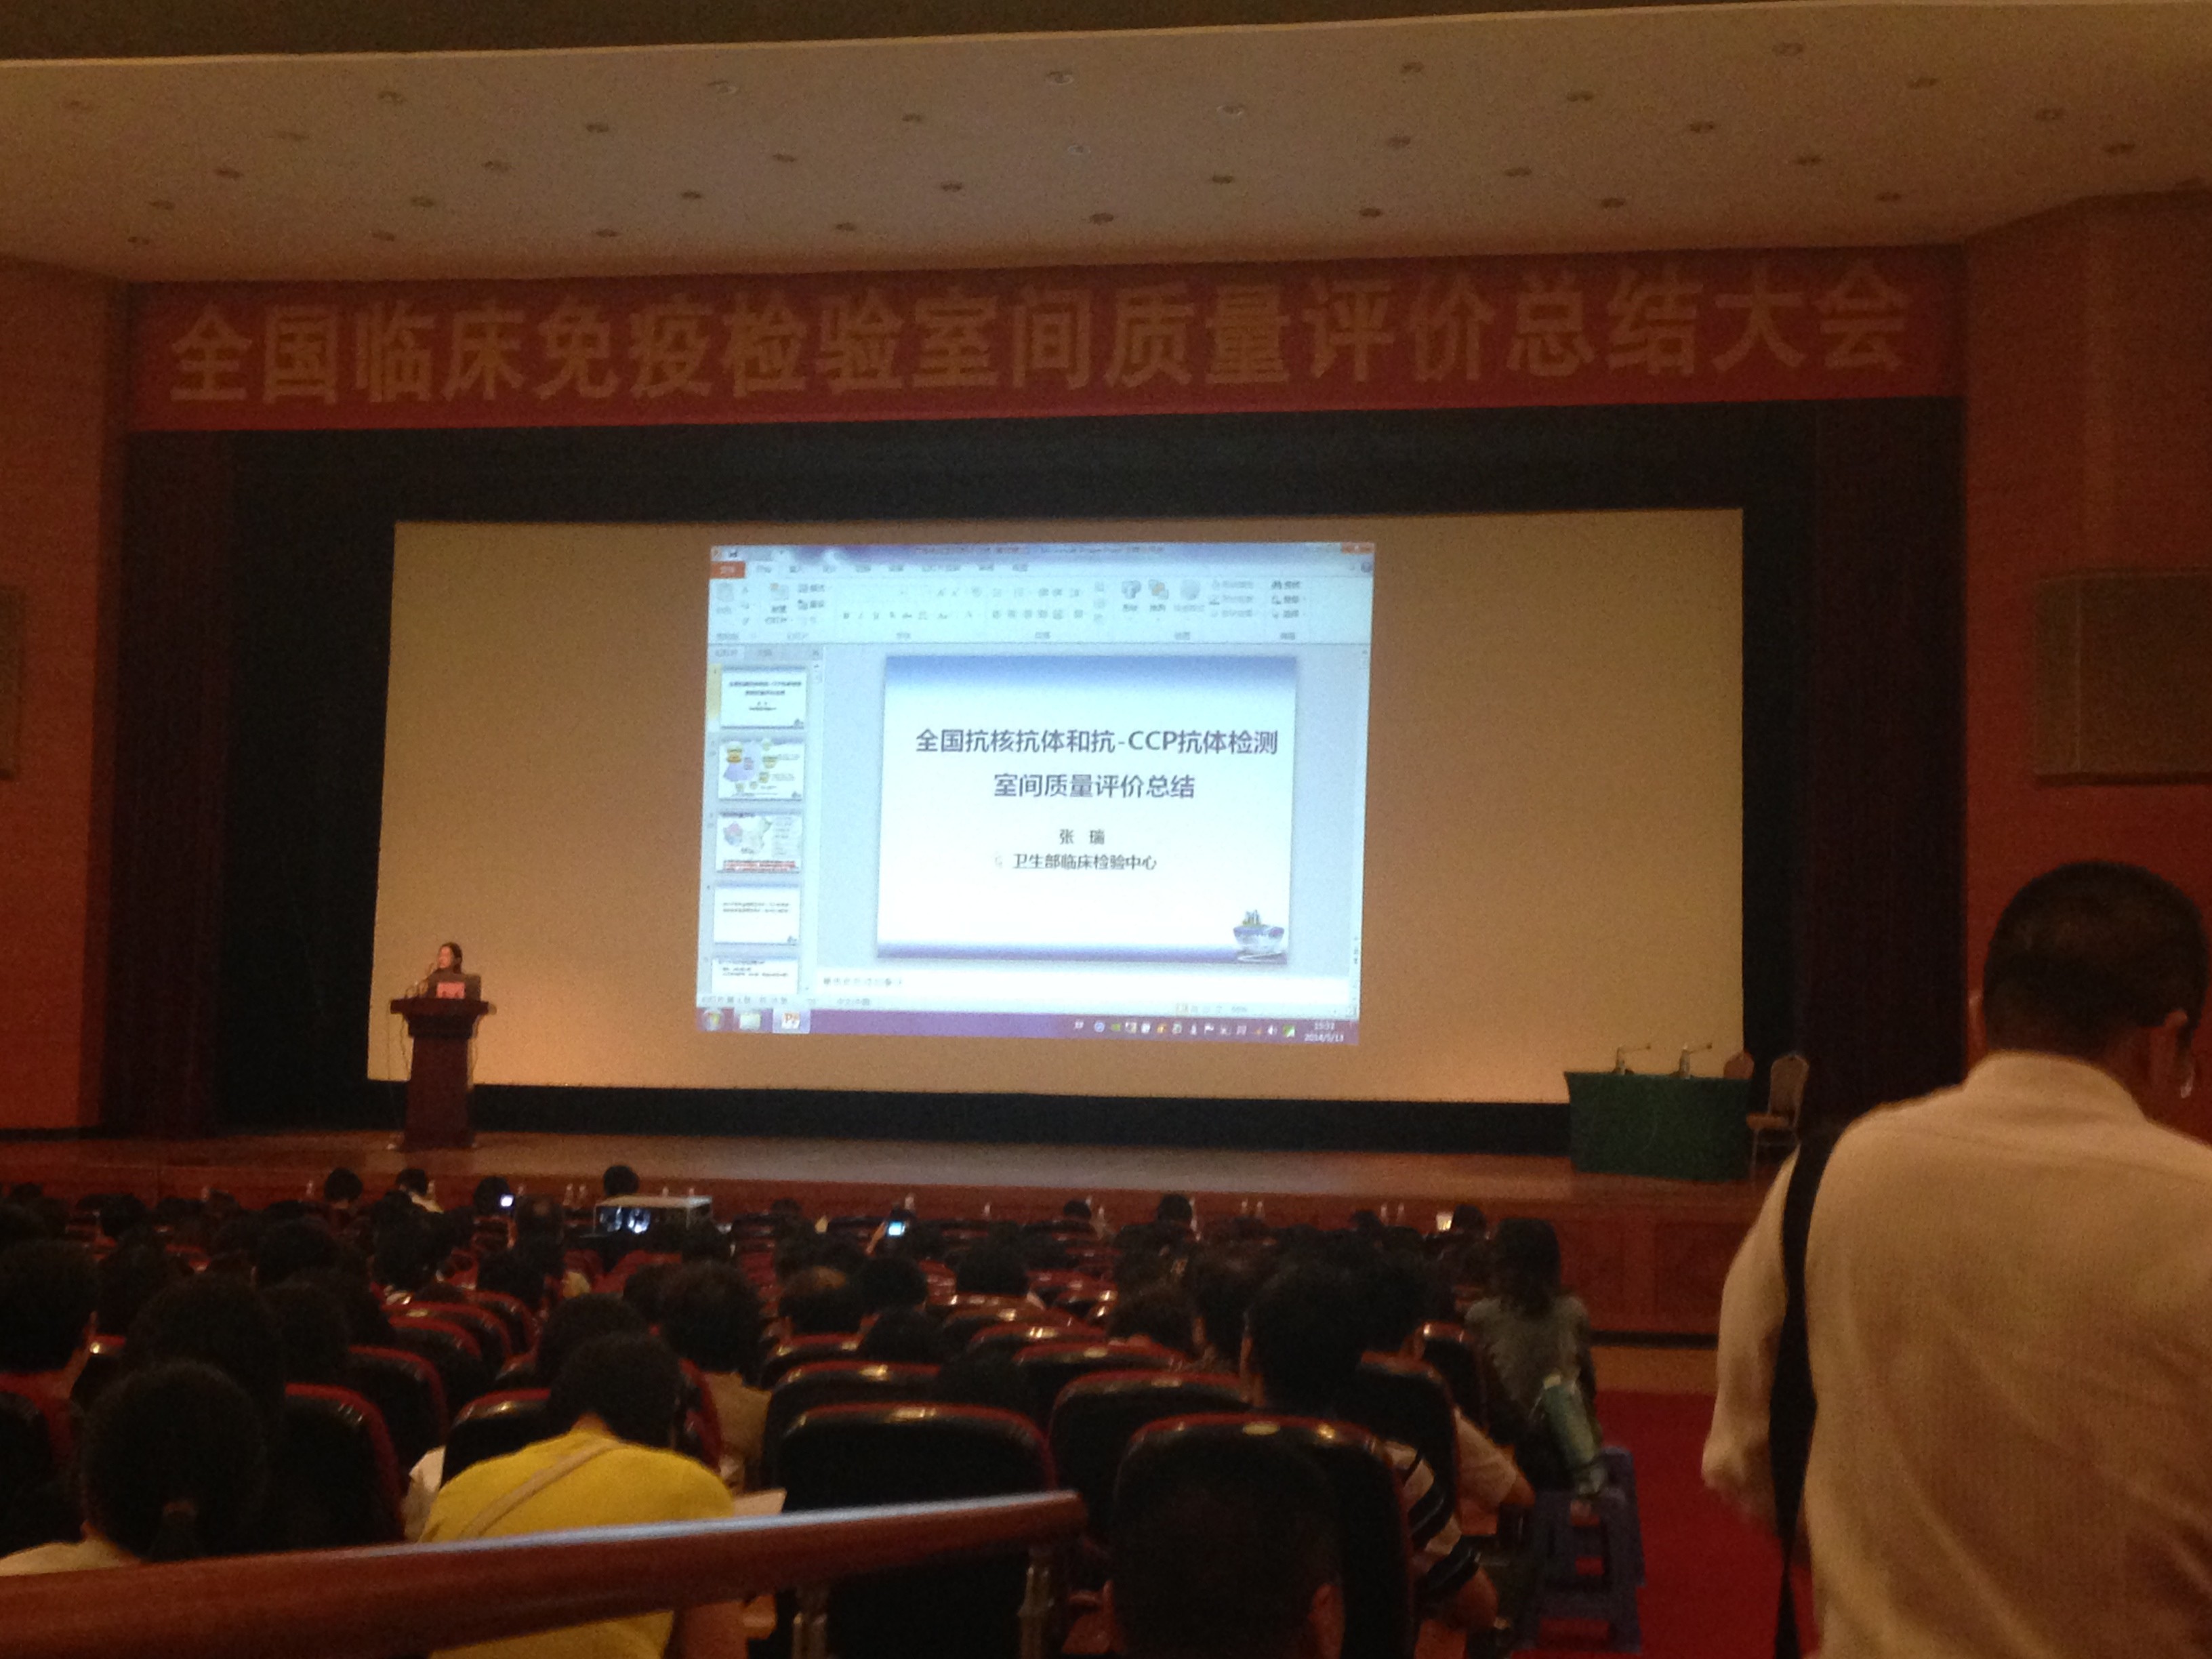 張江藥谷主題活動”亮相第二屆“上交會”，獲得廣泛好評。